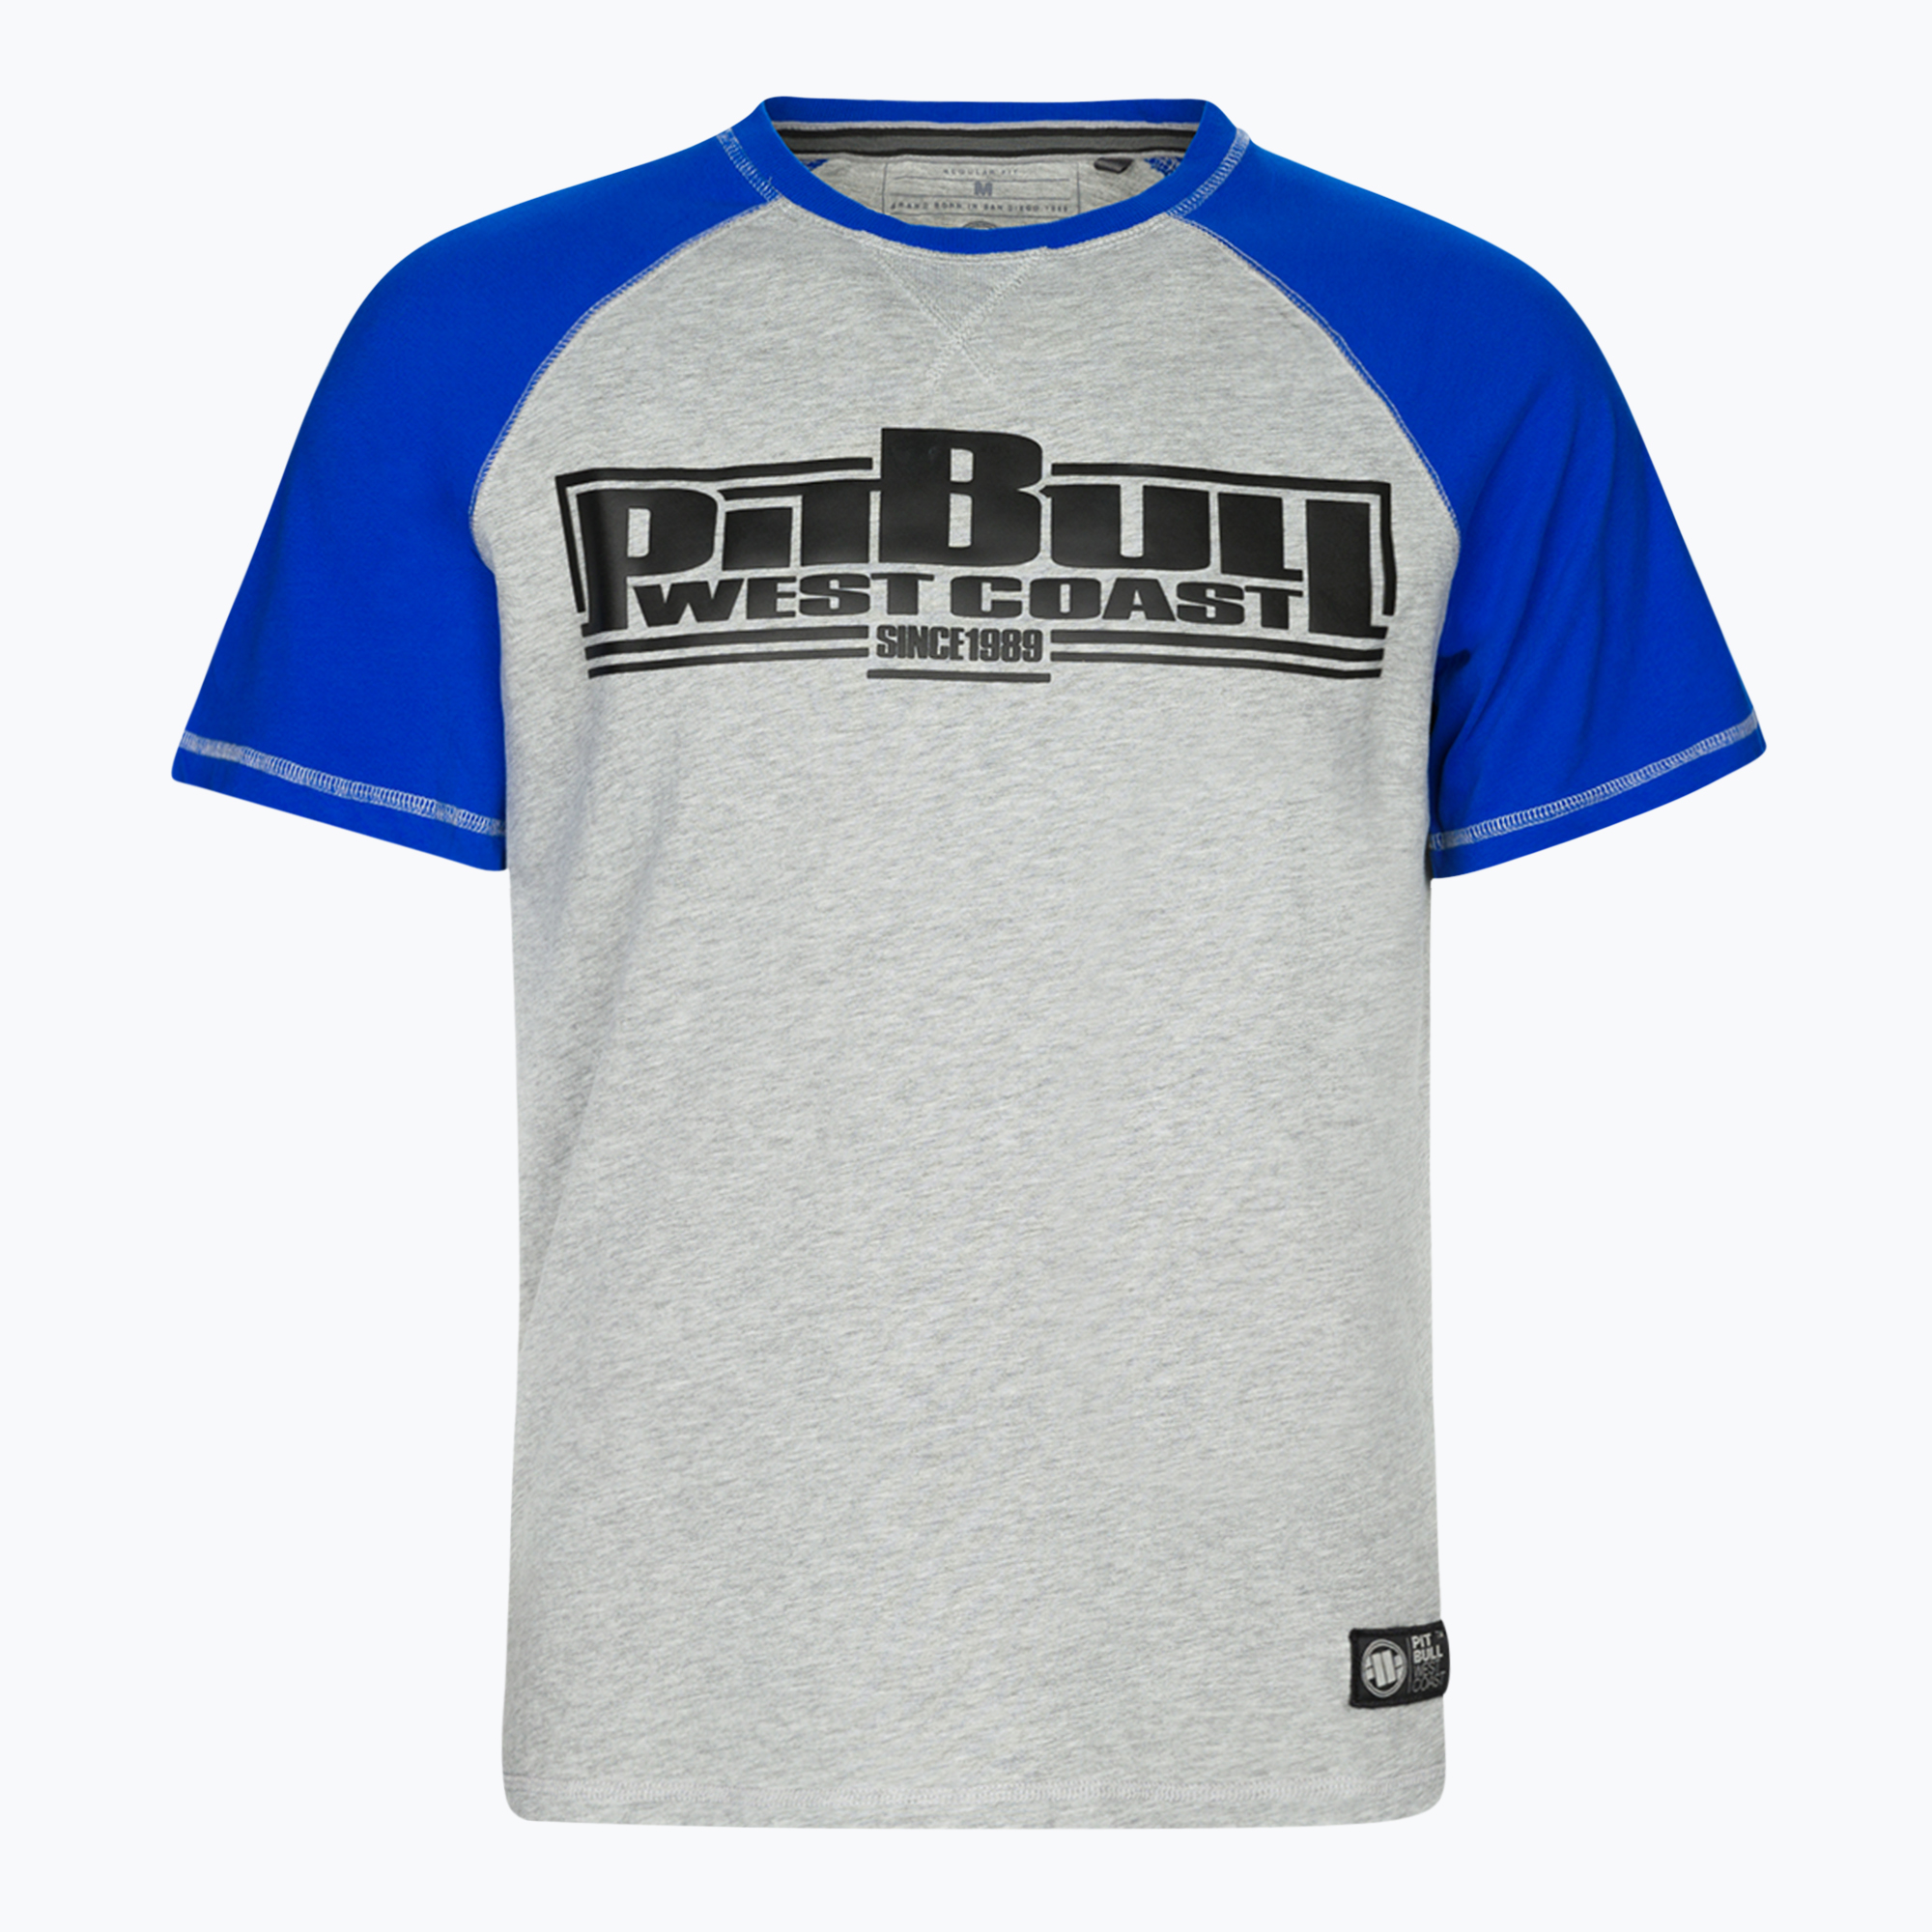 Pánske tričko Pitbull West Coast T-Shirt Boxing 210 royal blue